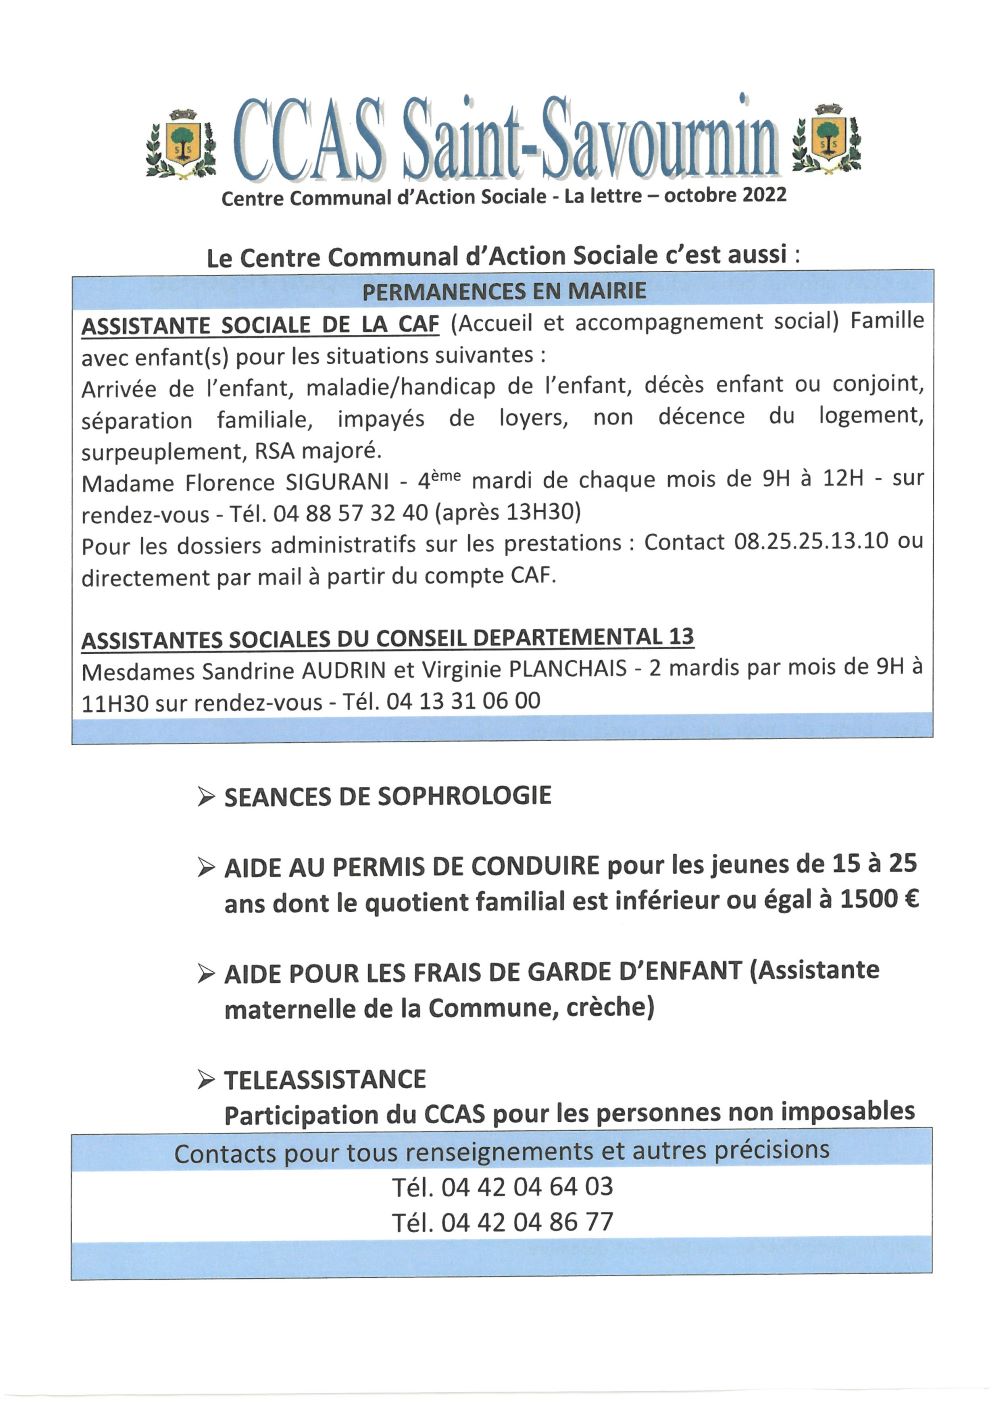 Mairie de Saint-Savournin CCAS Lettre information octobre 2022 page 2